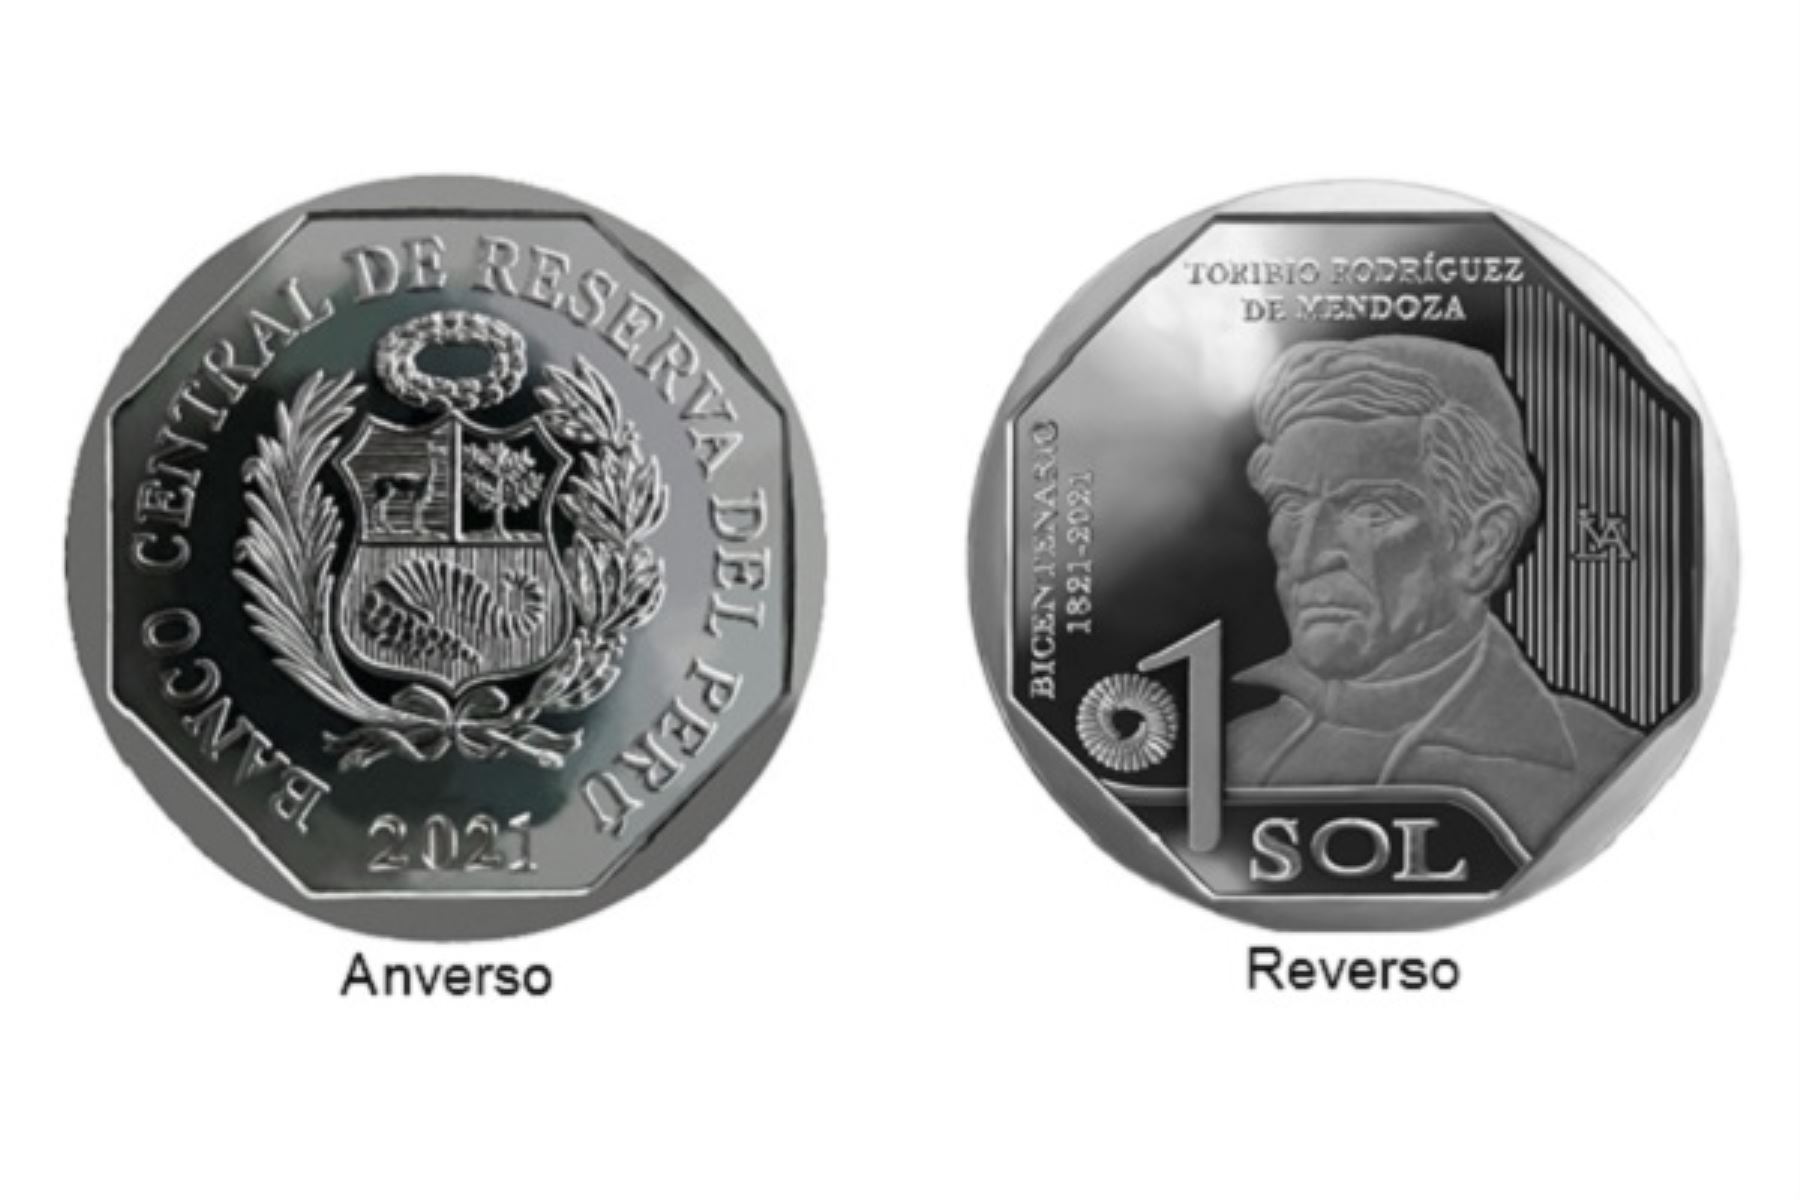 Moneda de S/ 1 alusiva a Toribio Rodríguez de Mendoza. Foto: cortesía.